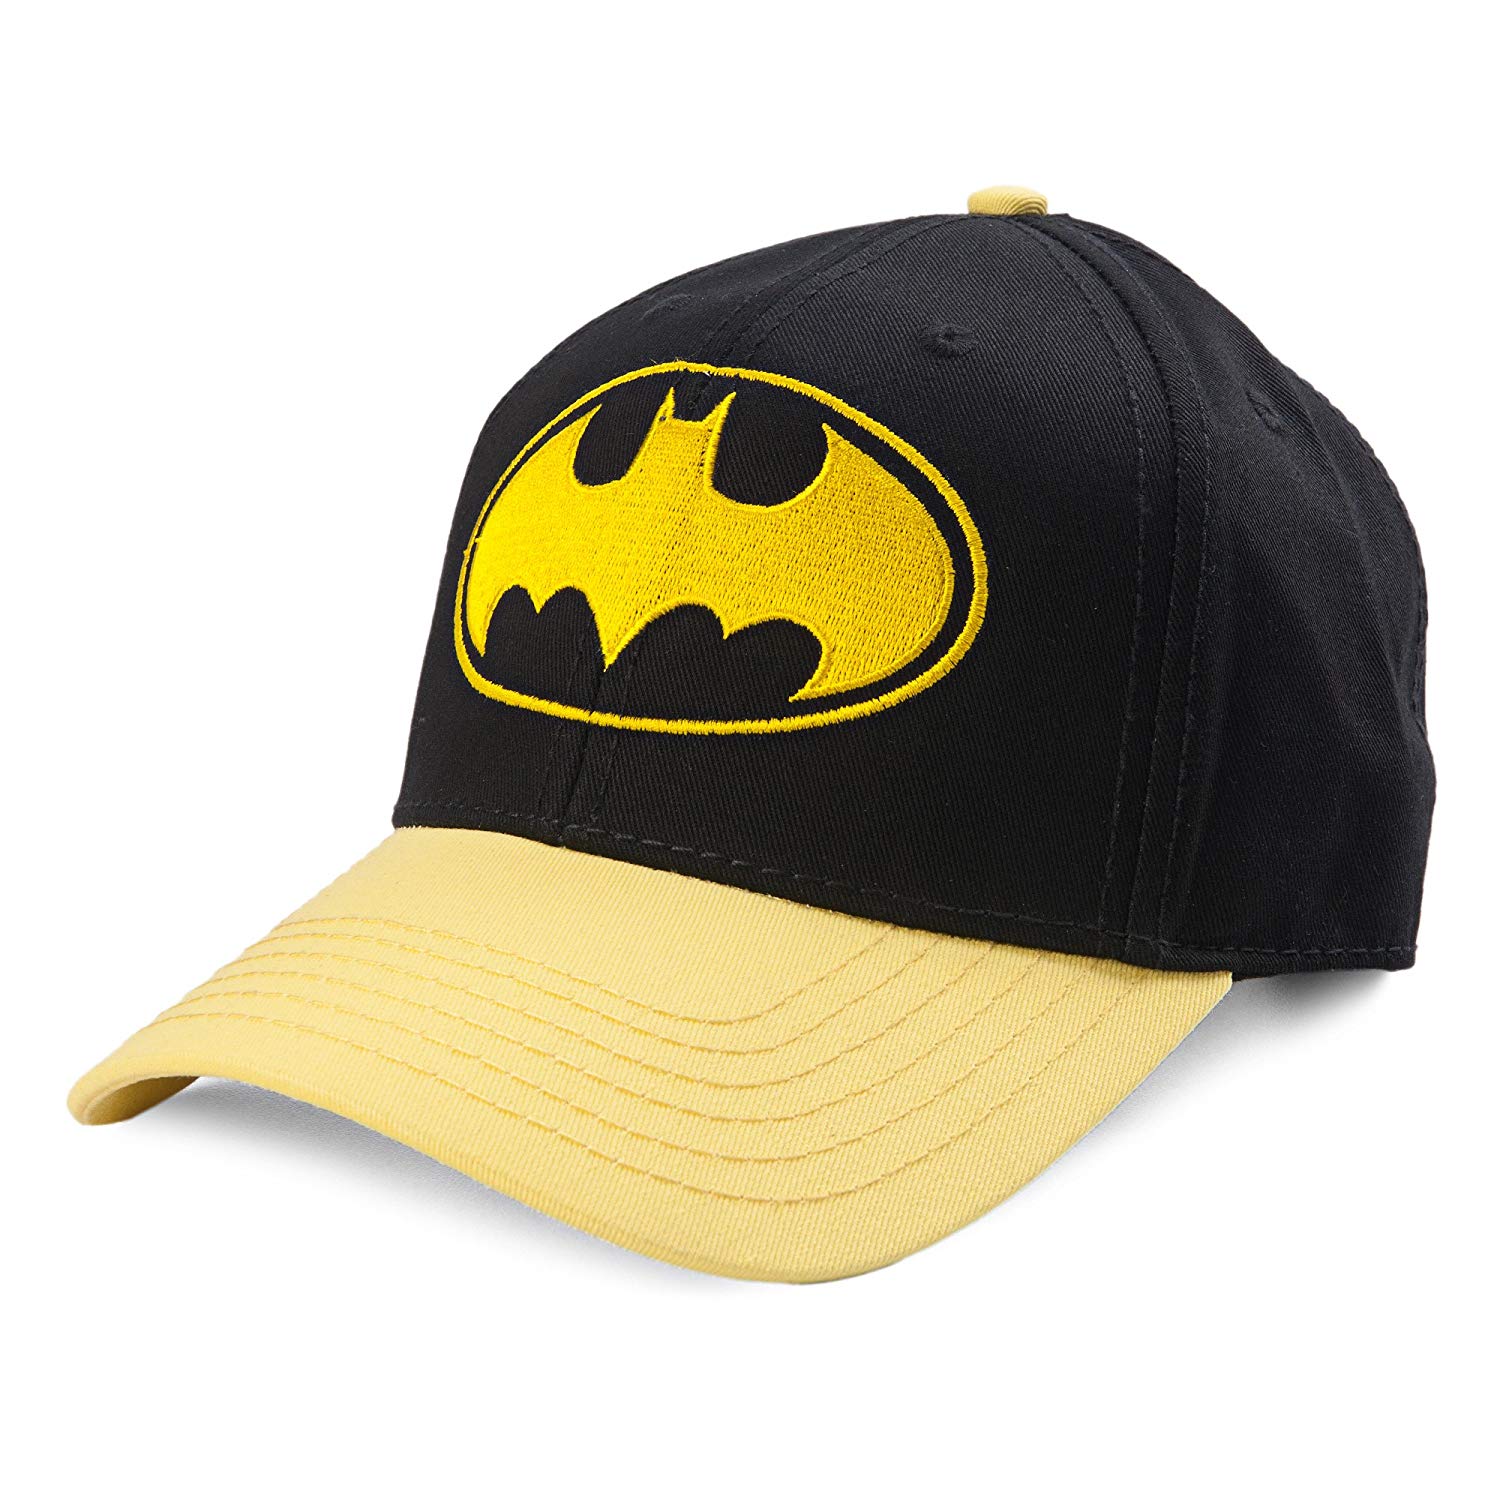 Batman Gold Logo - Amazon.com: DC Comics Batman Gold Bat Logo Curved Bill Snapback ...